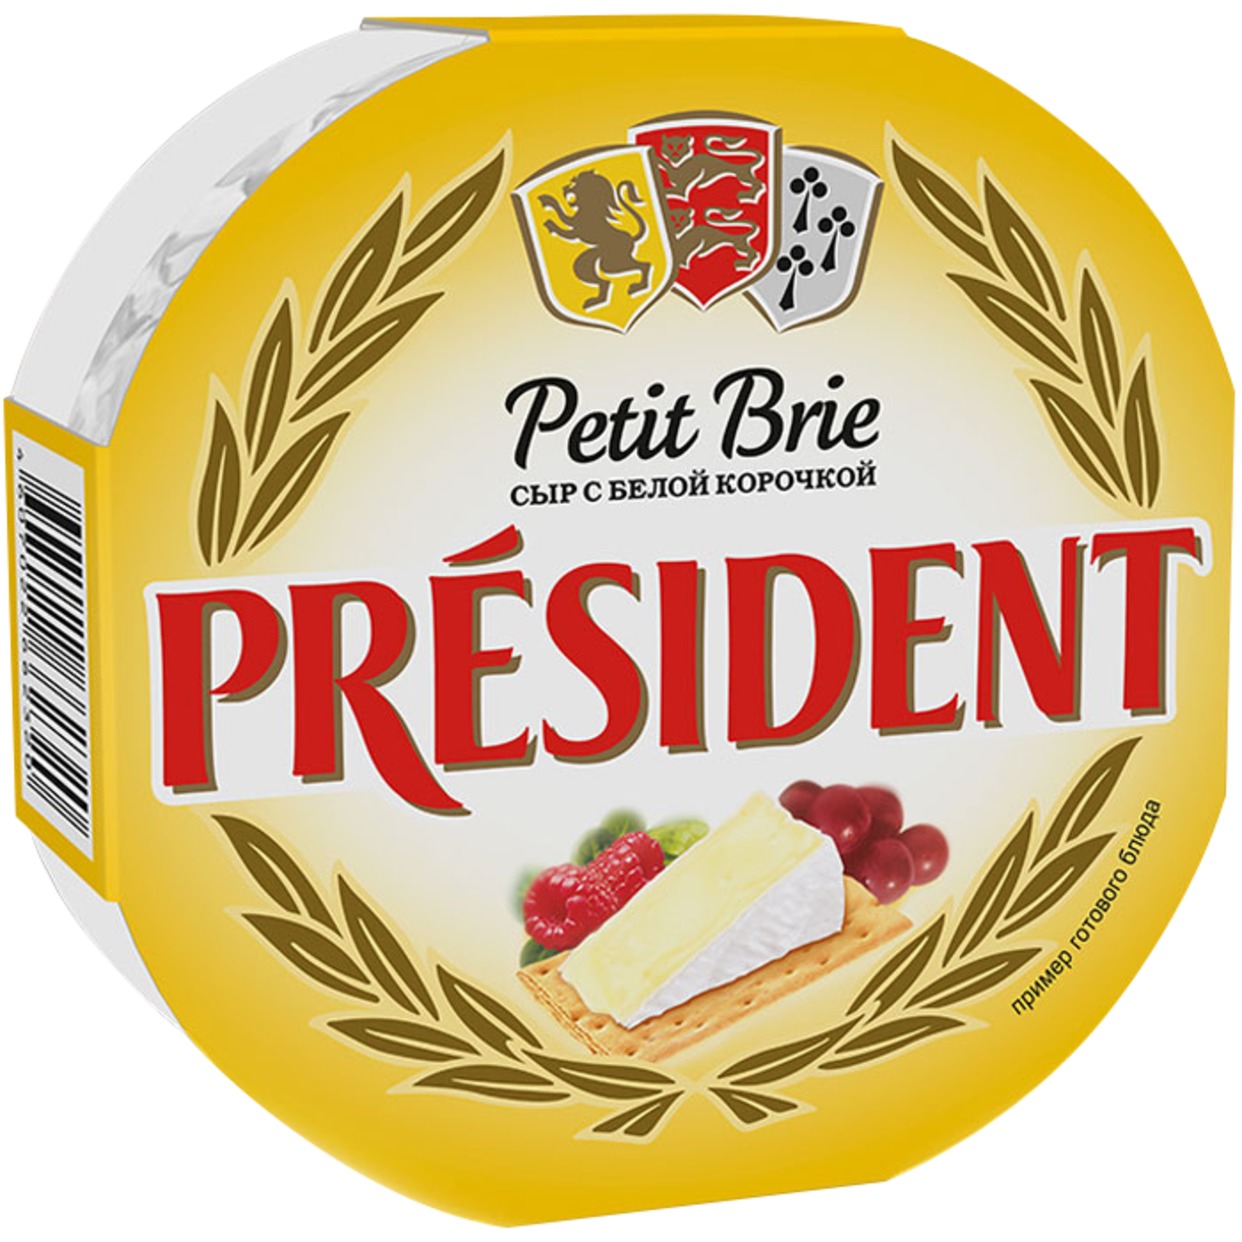 Сыр President Petit Brie мягкий с белой плесенью 60% 125г по акции в Пятерочке